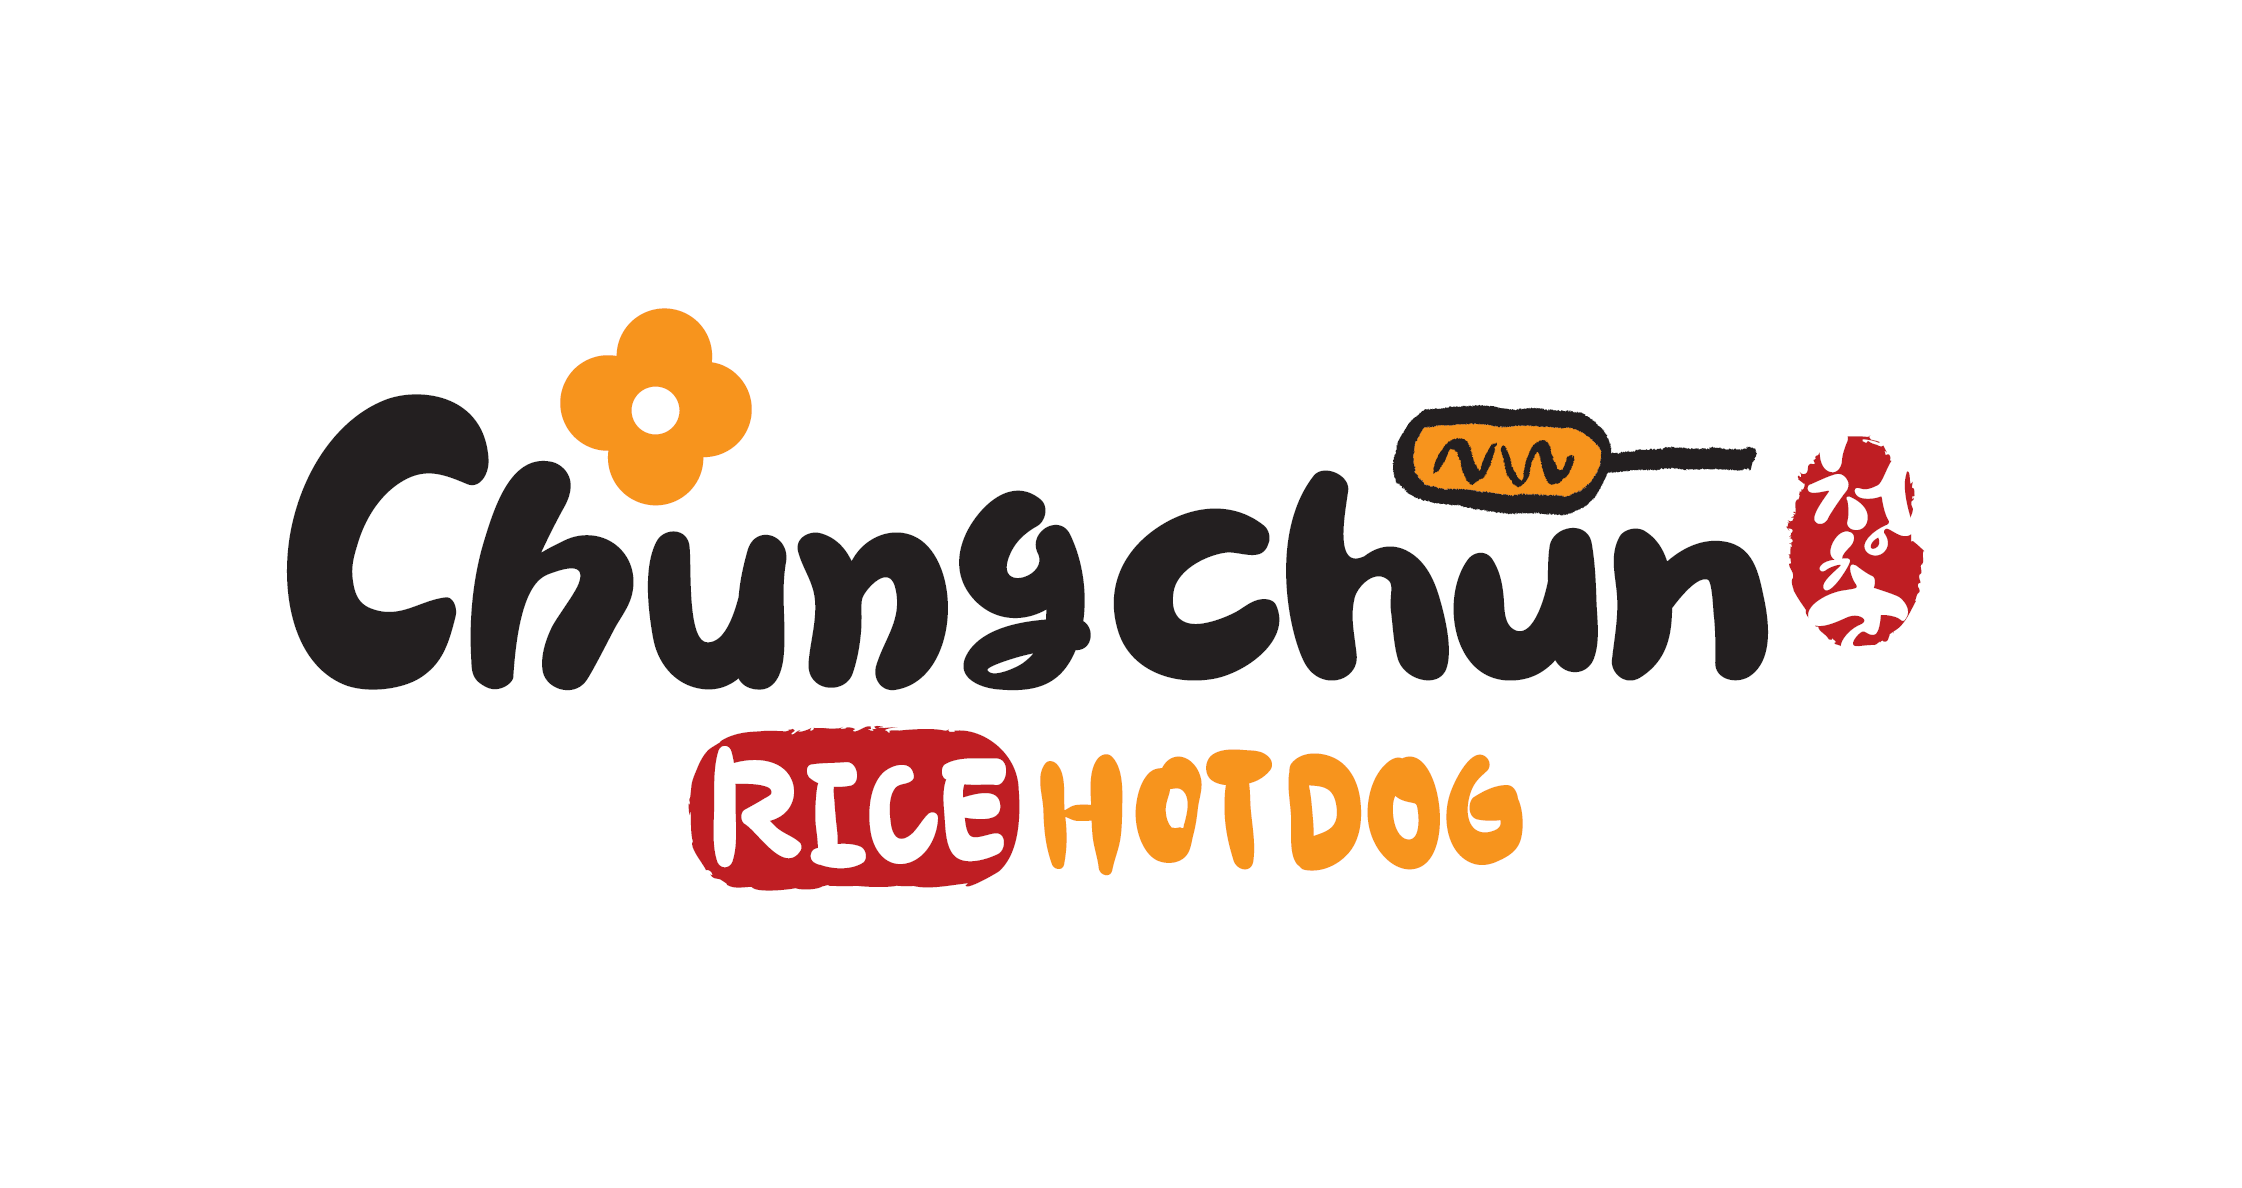 Chungchun Rice Hotdog logo